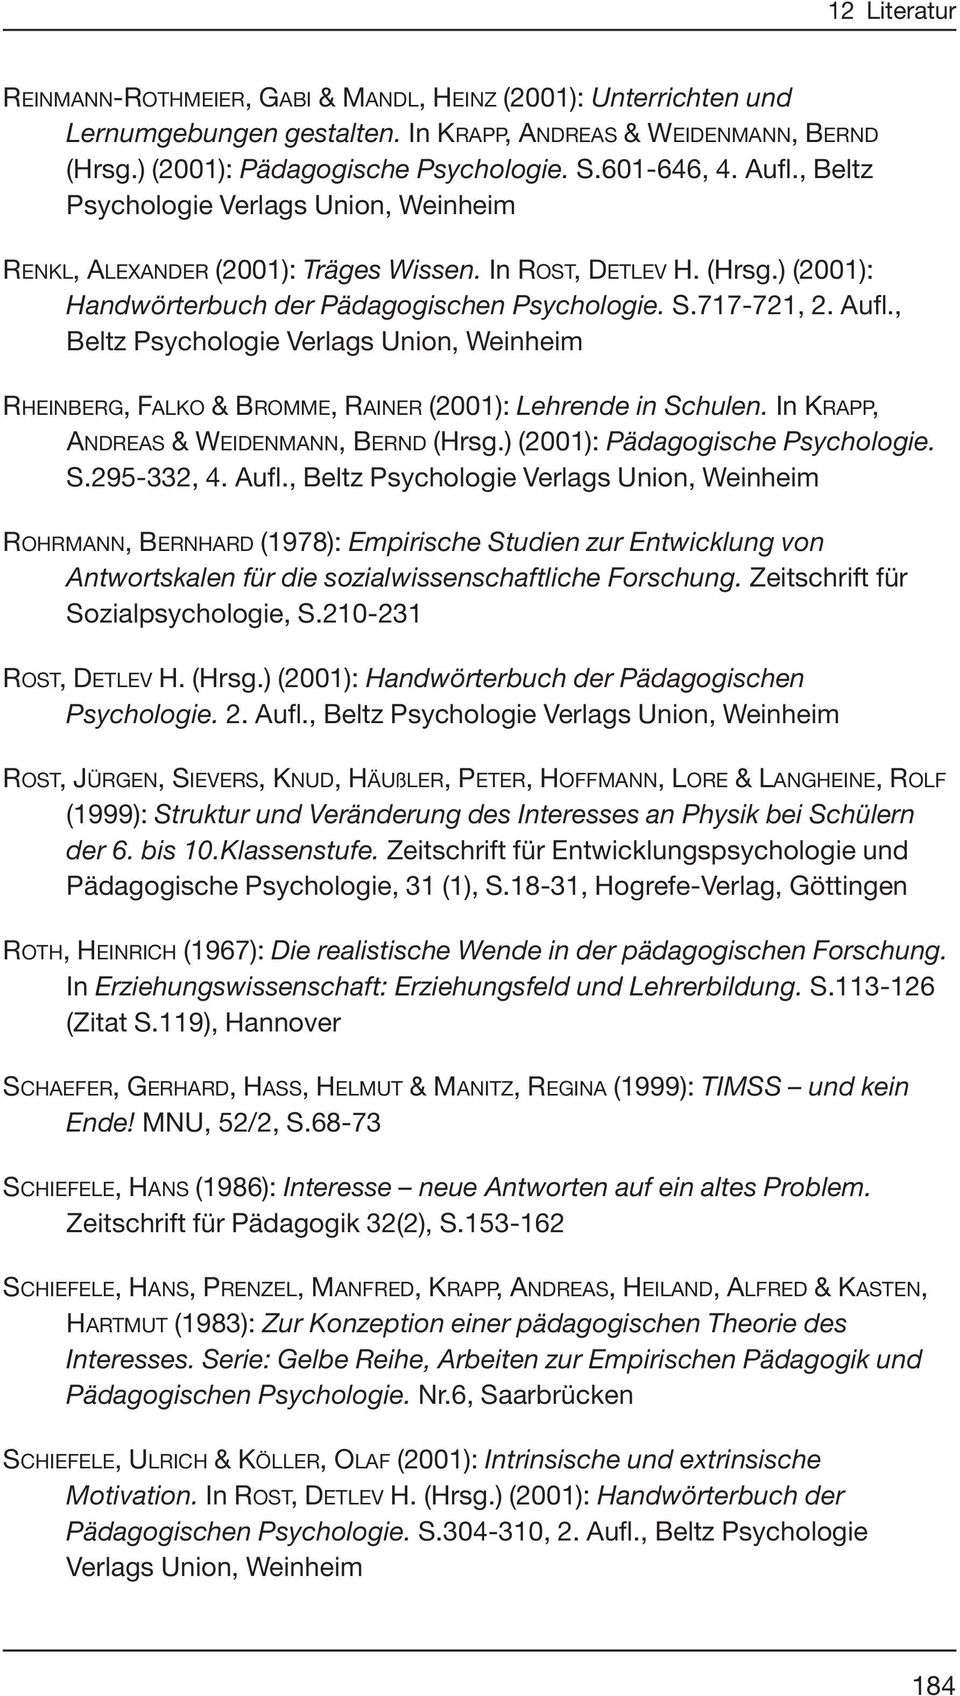 Beltz Psychologie Verlags Union Weinheim RHEINBERG FALKO & BROMME RAINER 2001